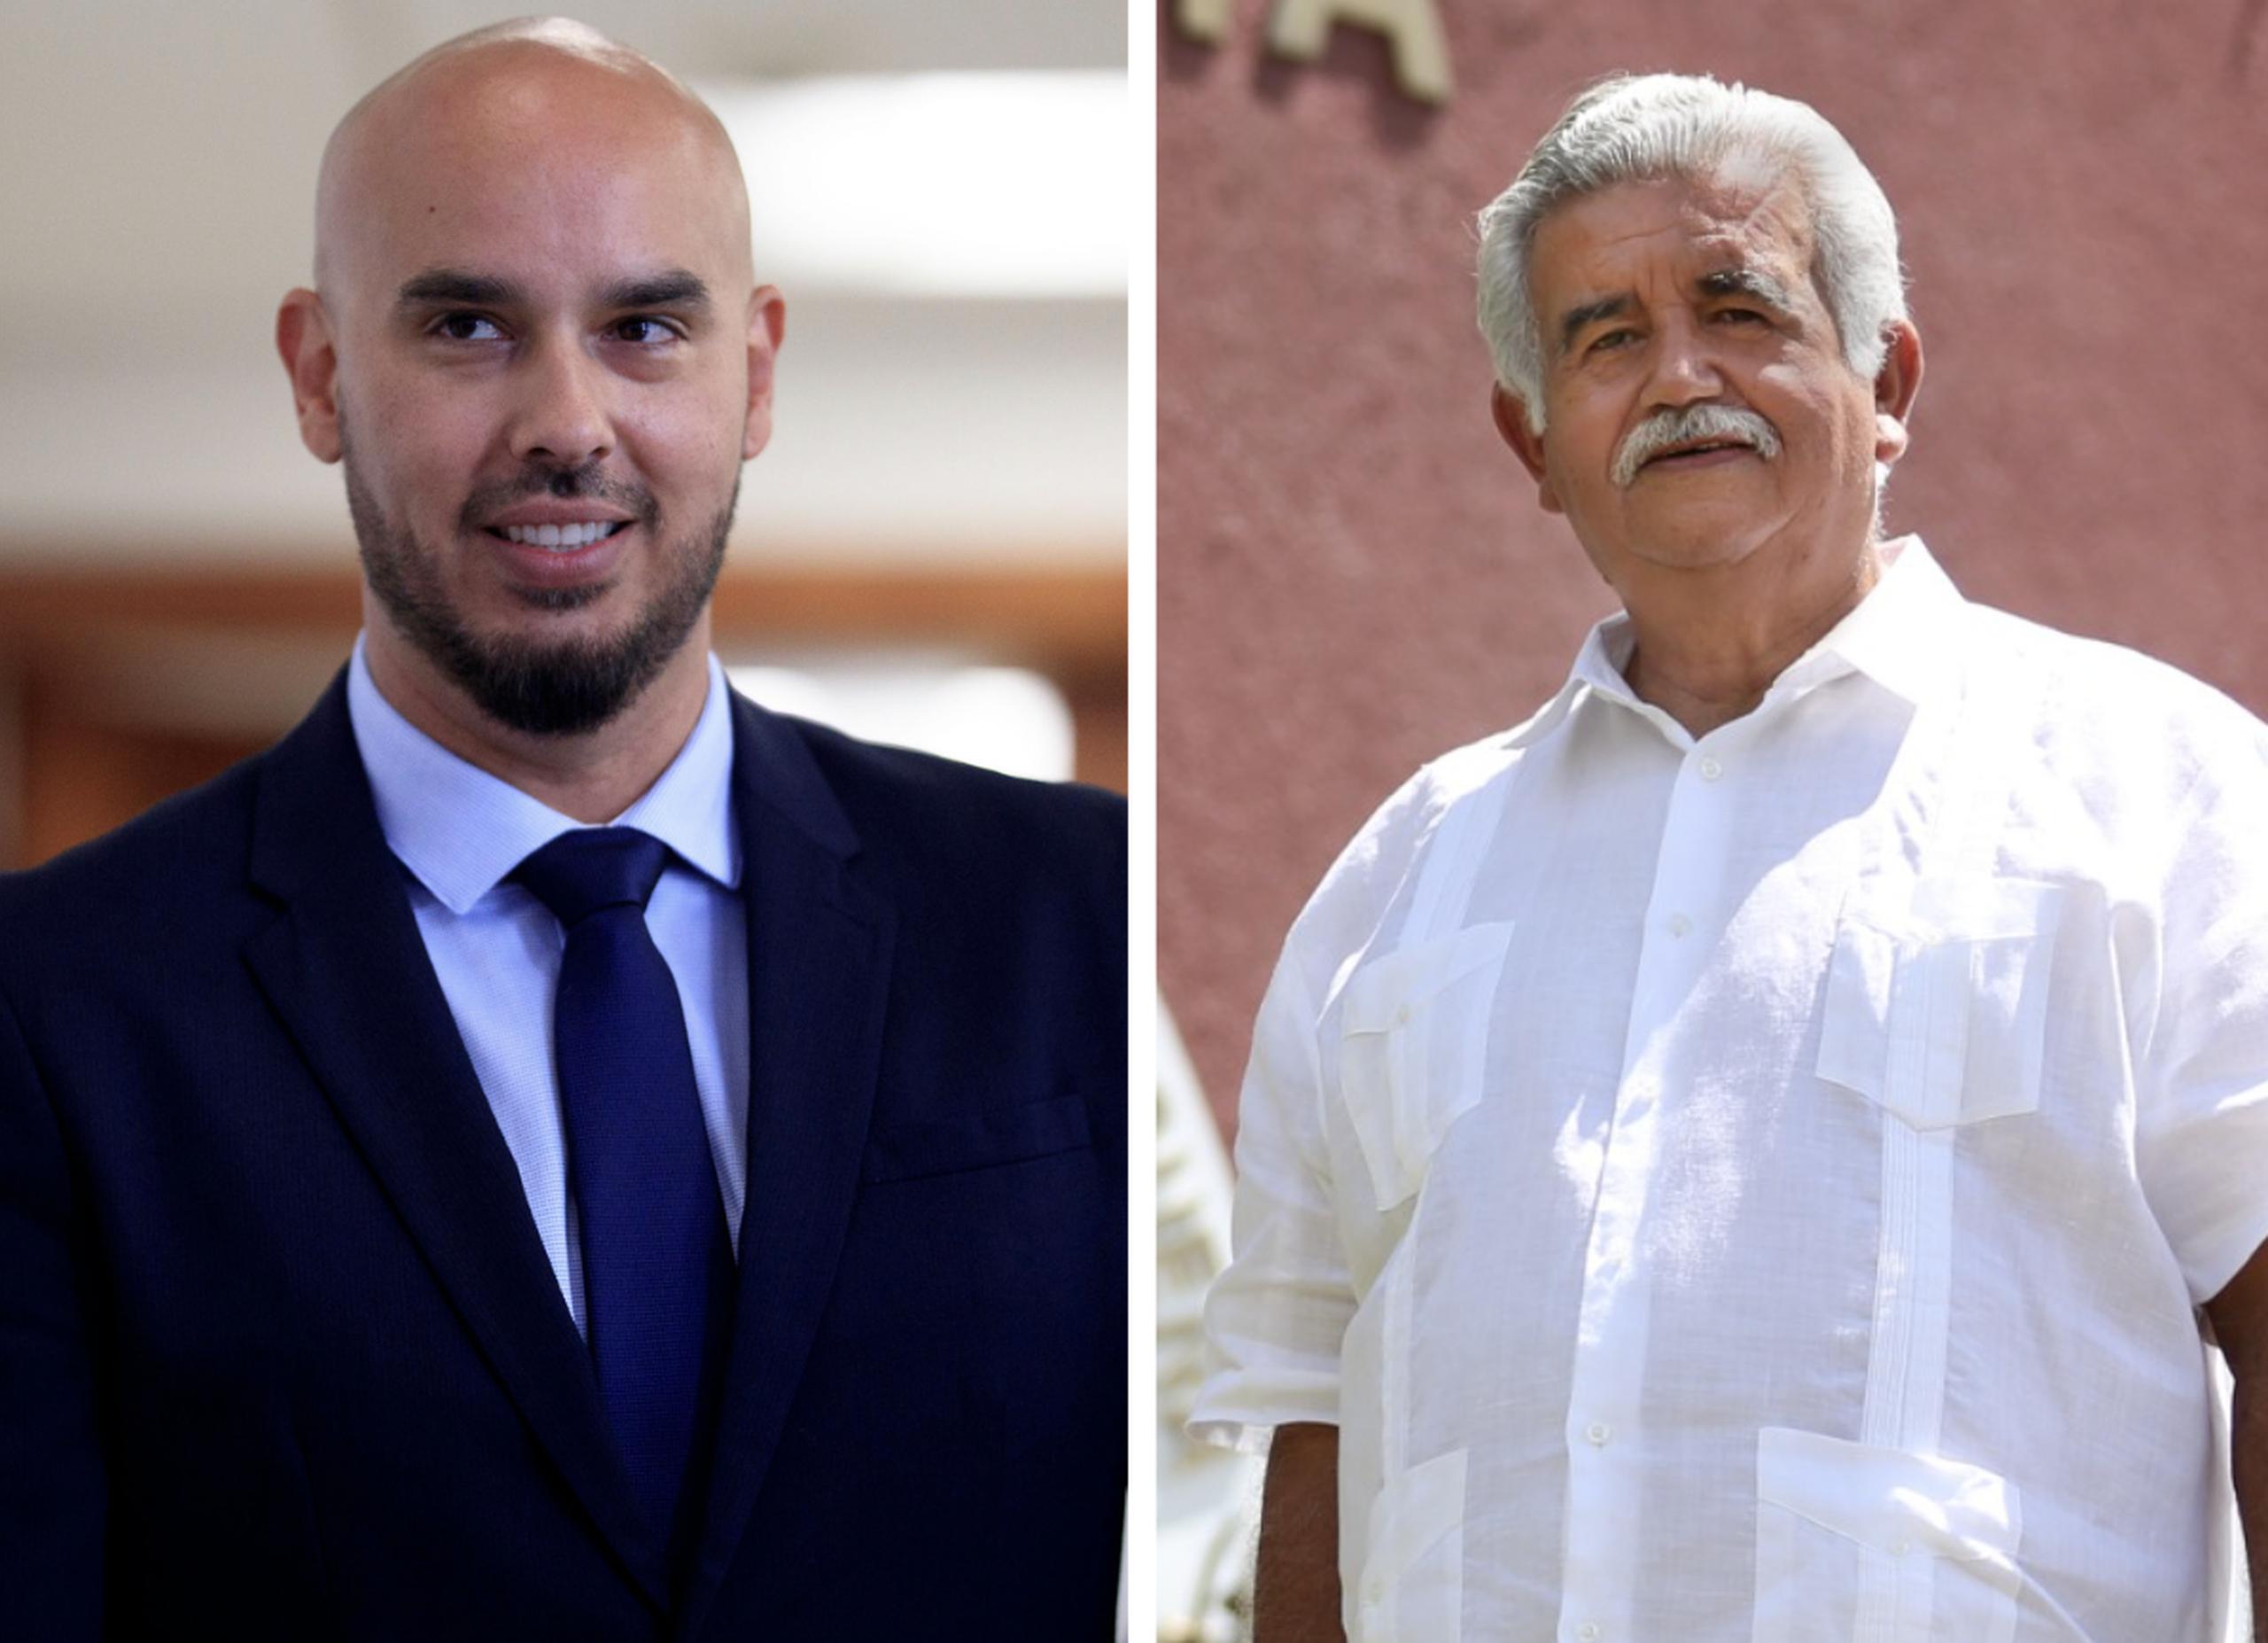 Los alcaldes de Fajardo y Jayuya, José Meléndez Méndez y Jorge L. González Otero, tendrán hasta el 20 de febrero para responder a los señalamientos.